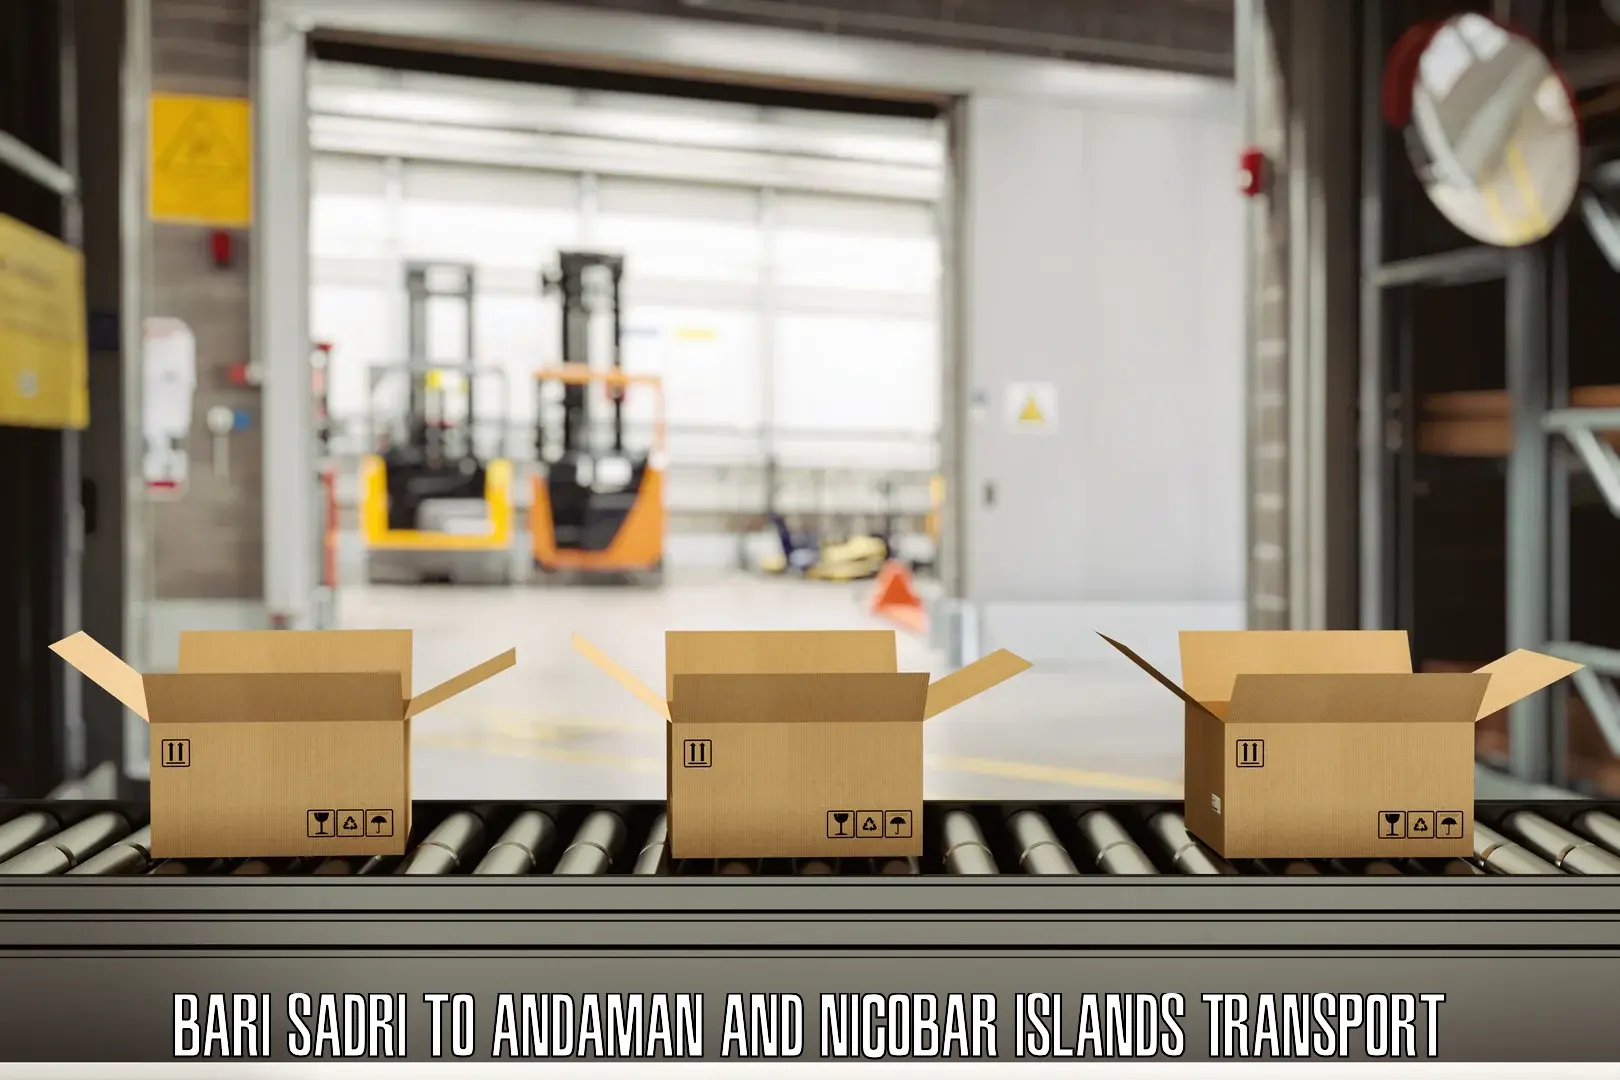 Container transport service Bari Sadri to Nicobar